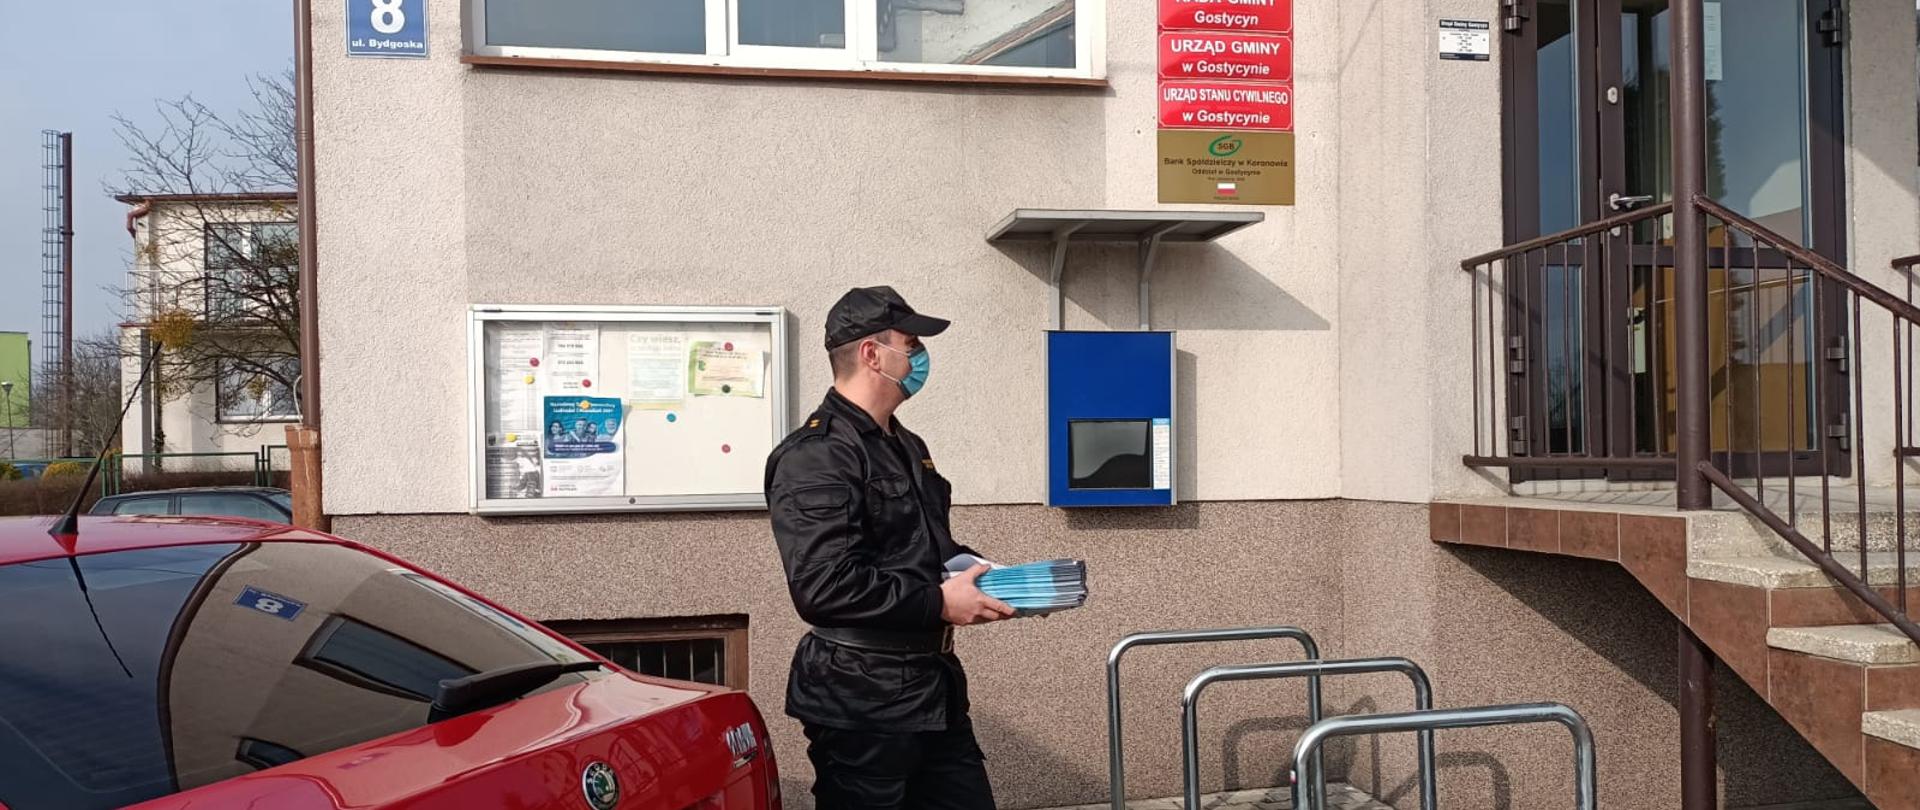 Funkcjonariusz trzymający pakiet ulotek przed siedzibą Urzędu Gminy Gostycyn. 